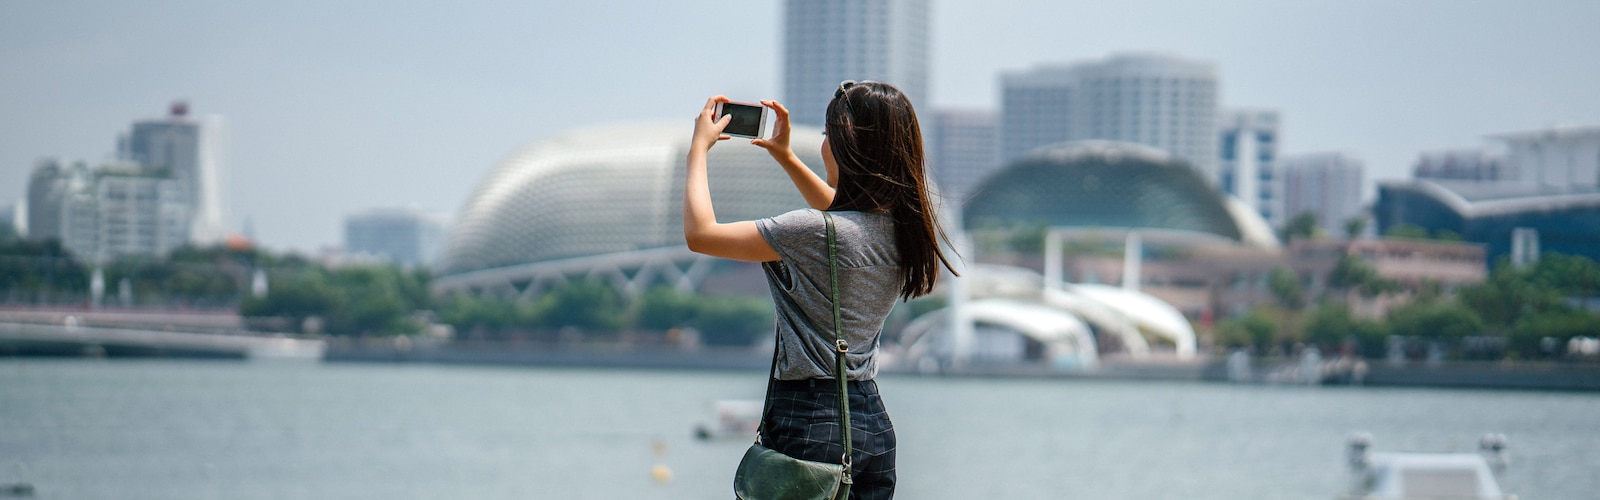 Μια γυναίκα που βγάζει μια φωτογραφία με θέα στην πόλη χρησιμοποιώντας ένα iPhone